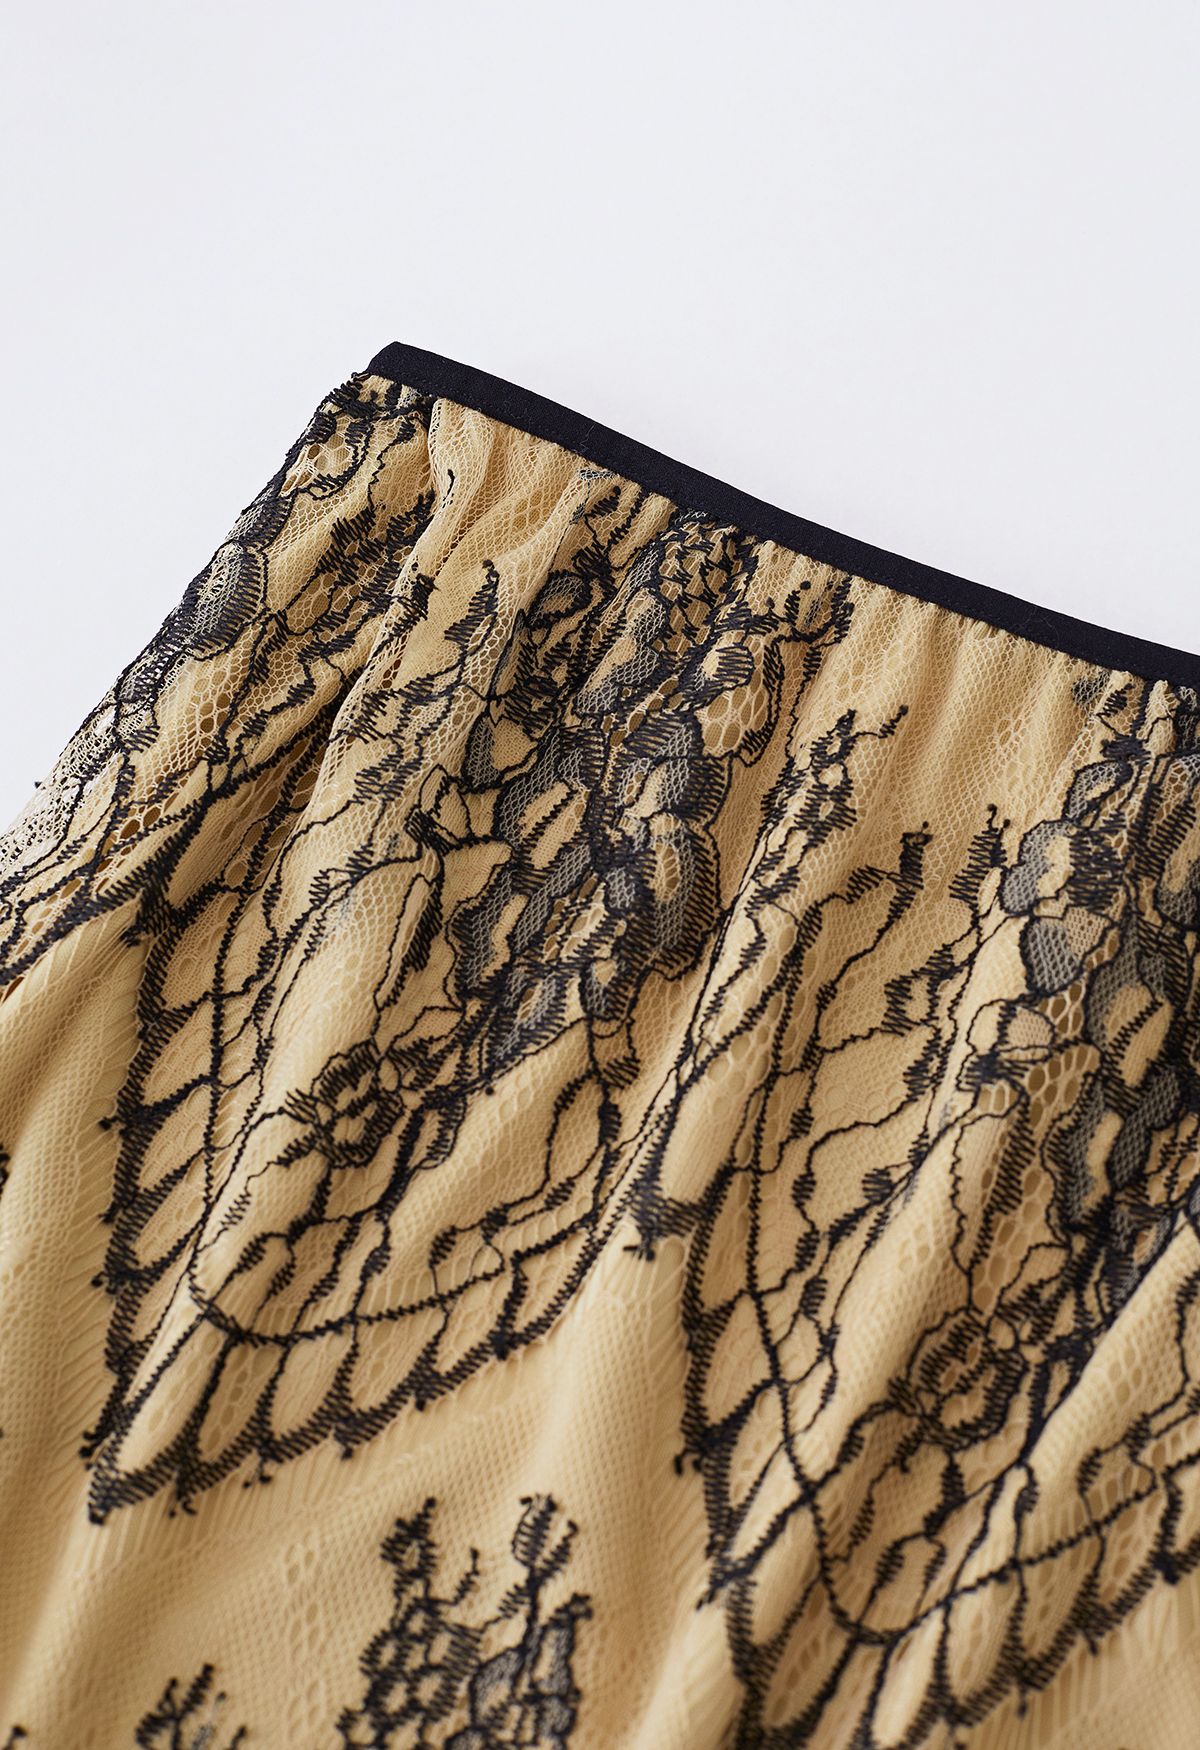 Exquisita falda de encaje bordado